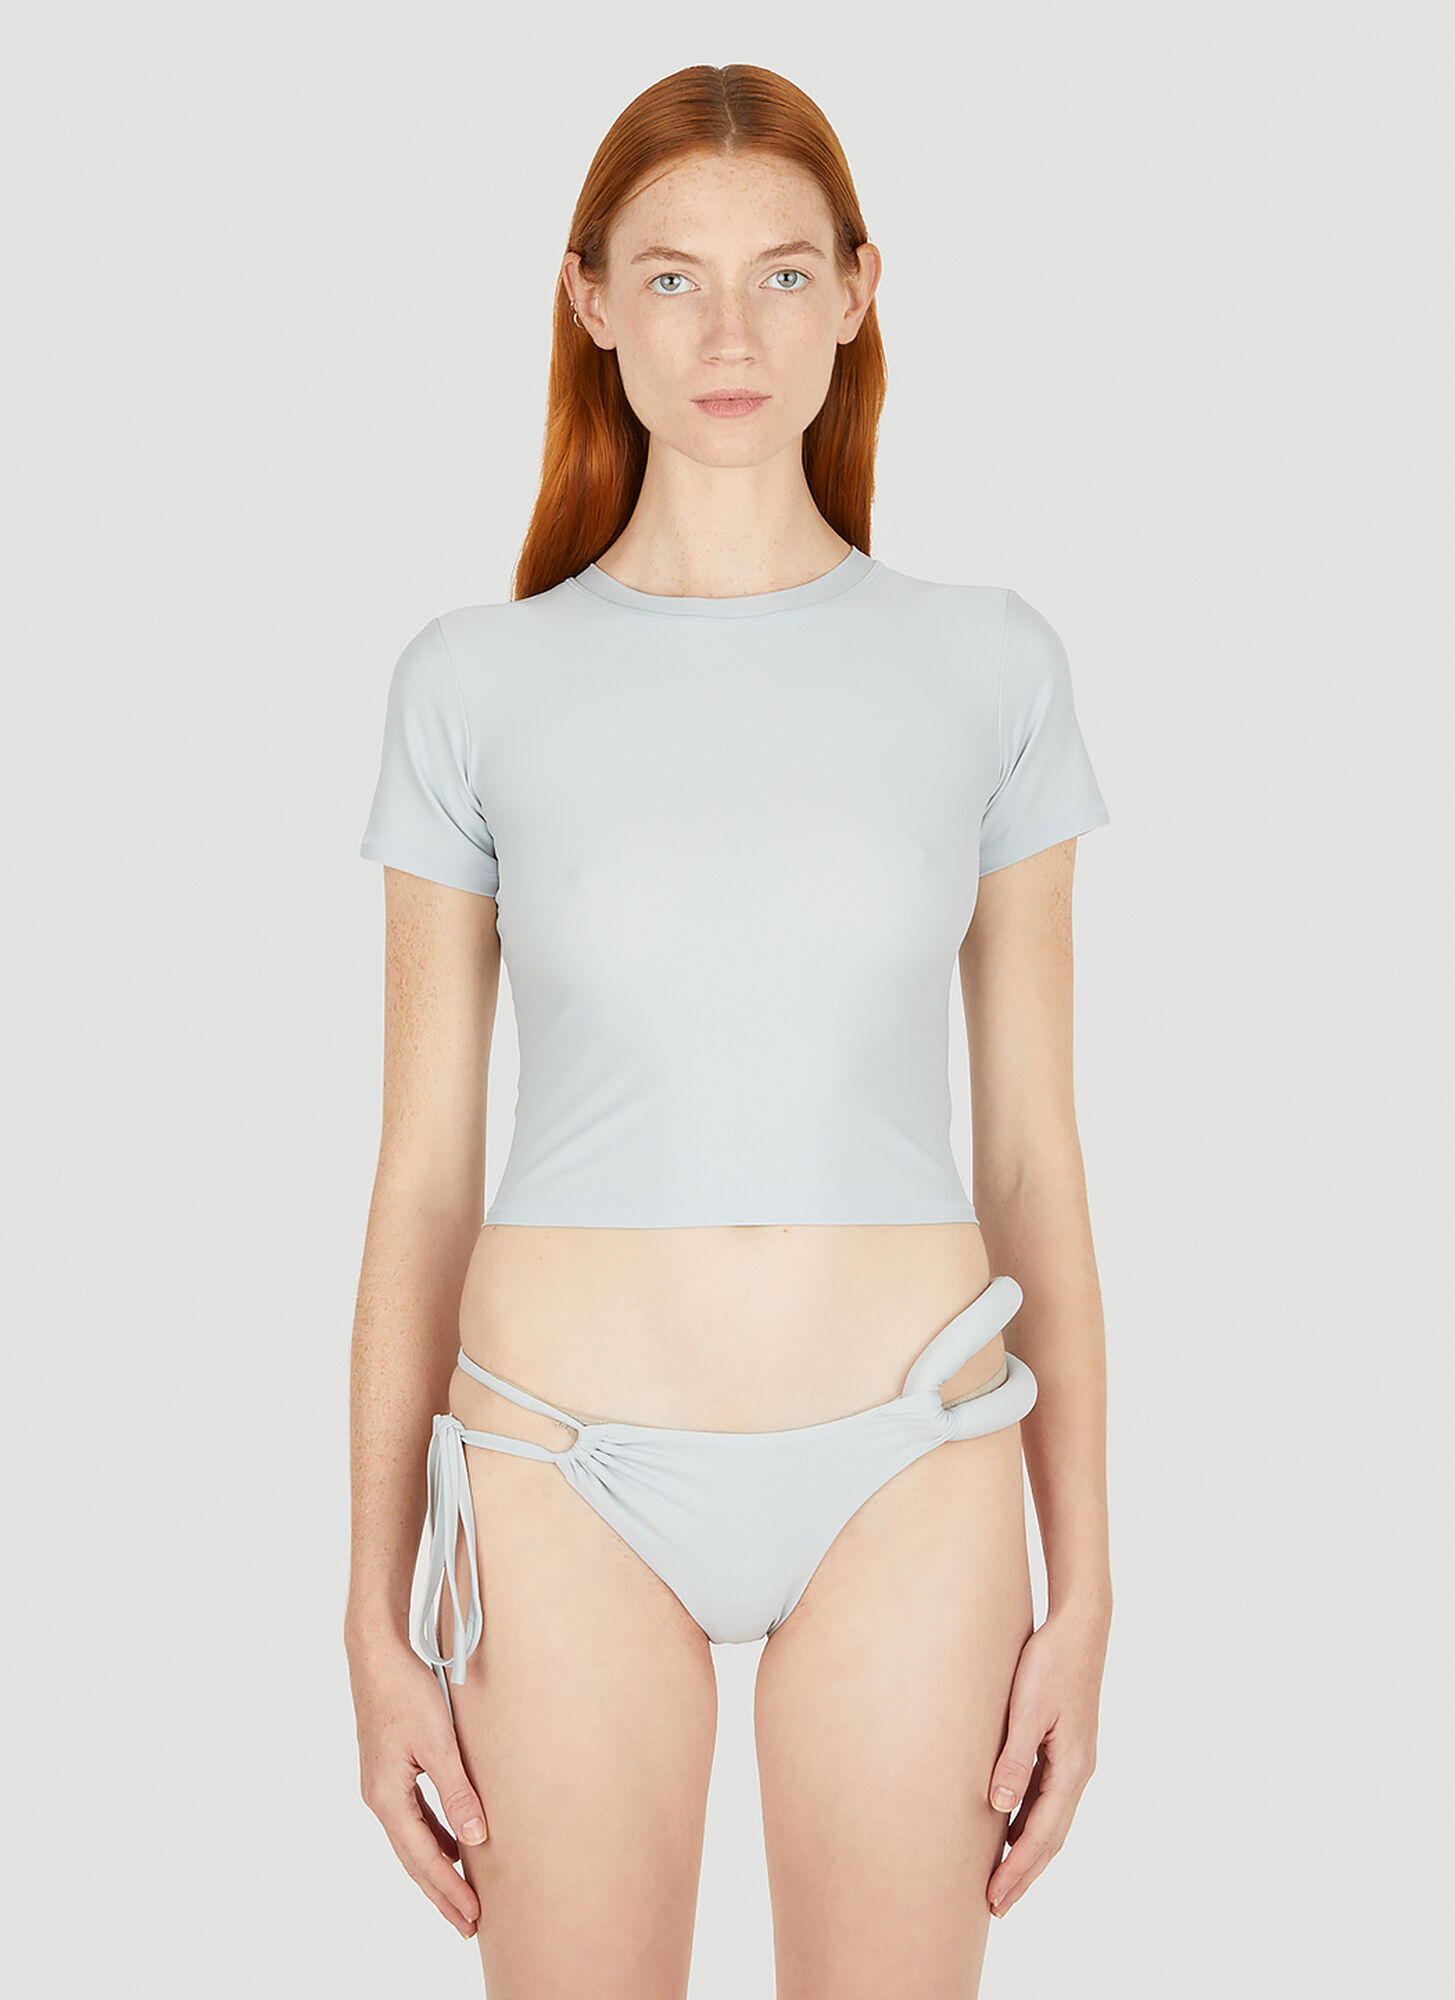 Entire Studios Aquatic Guard T-shirt Female Light Grey